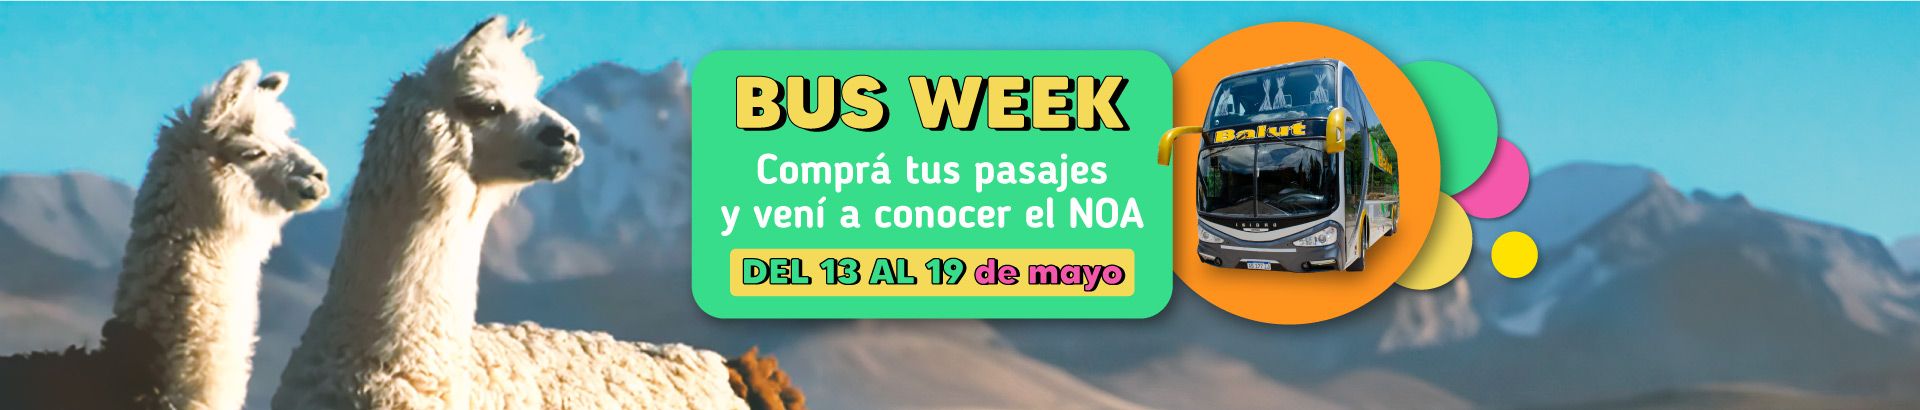 Bus week